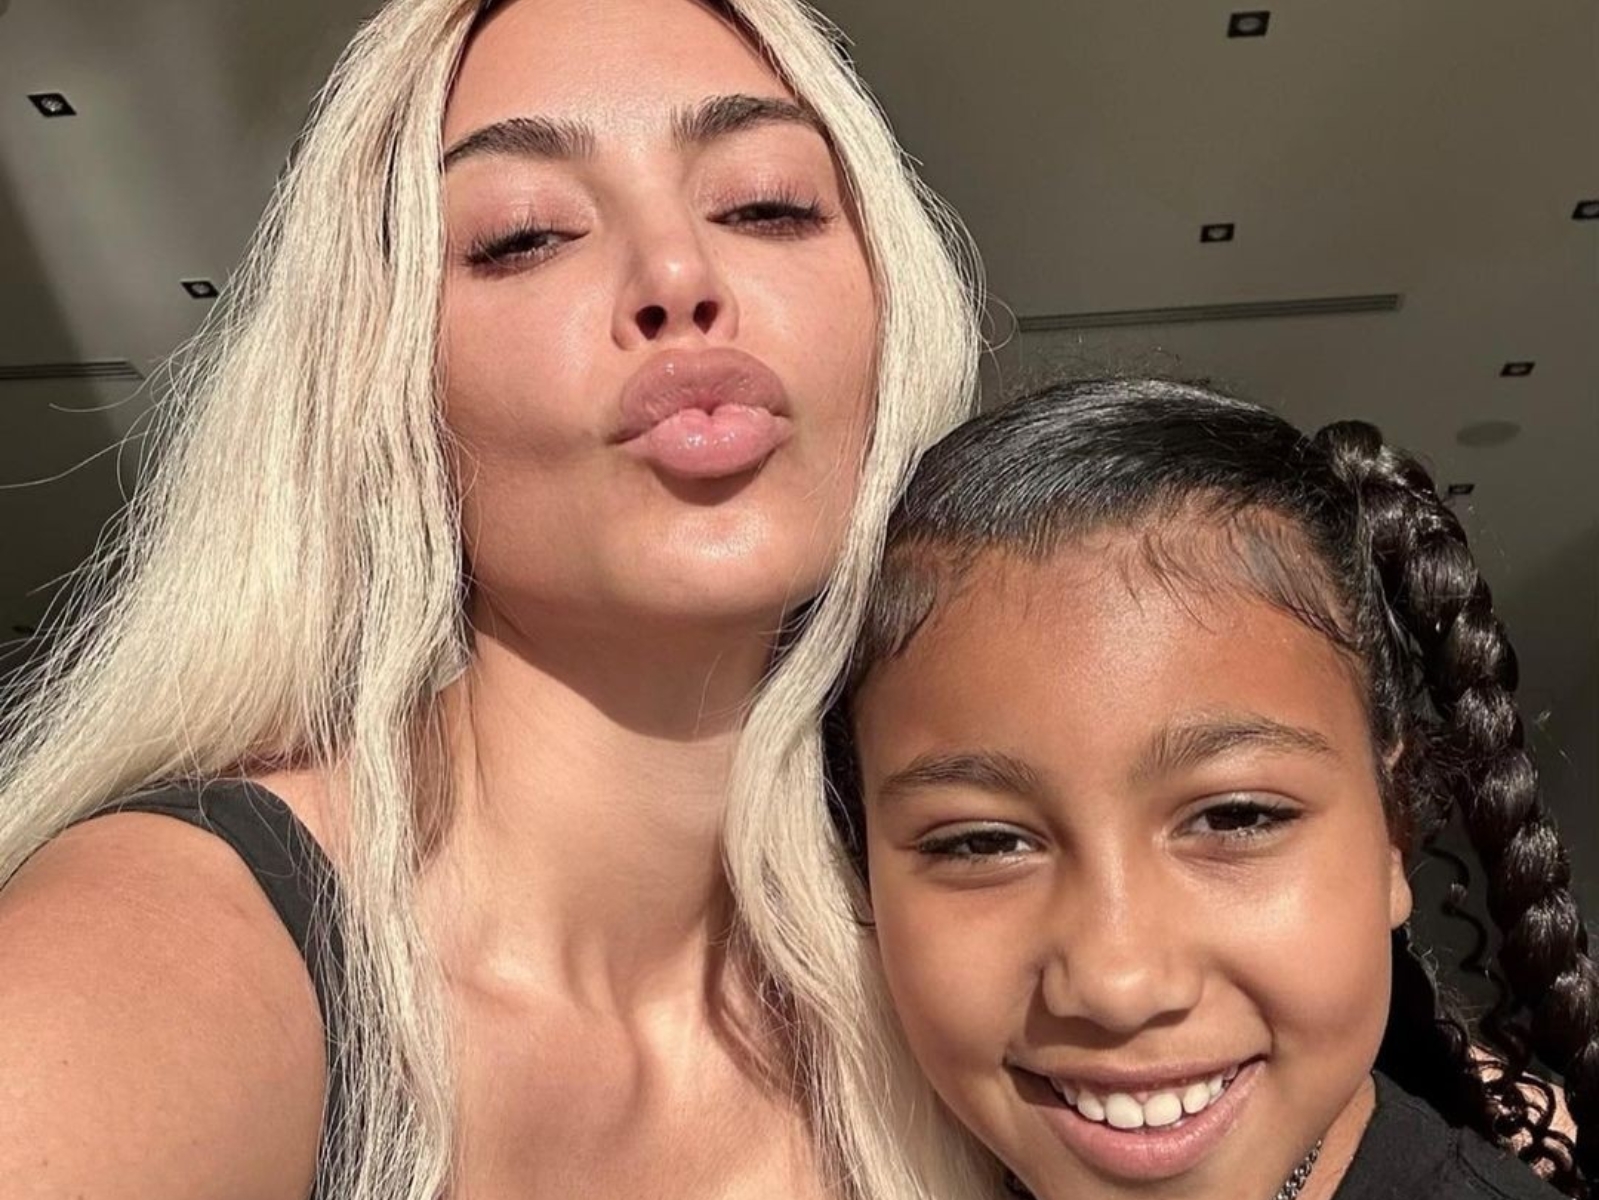 金卡戴珊 Kim Kardashian 把女兒 North West 畫成肯爺，謎樣舉動引熱議：「可憐的小孩，被媽媽操控！」